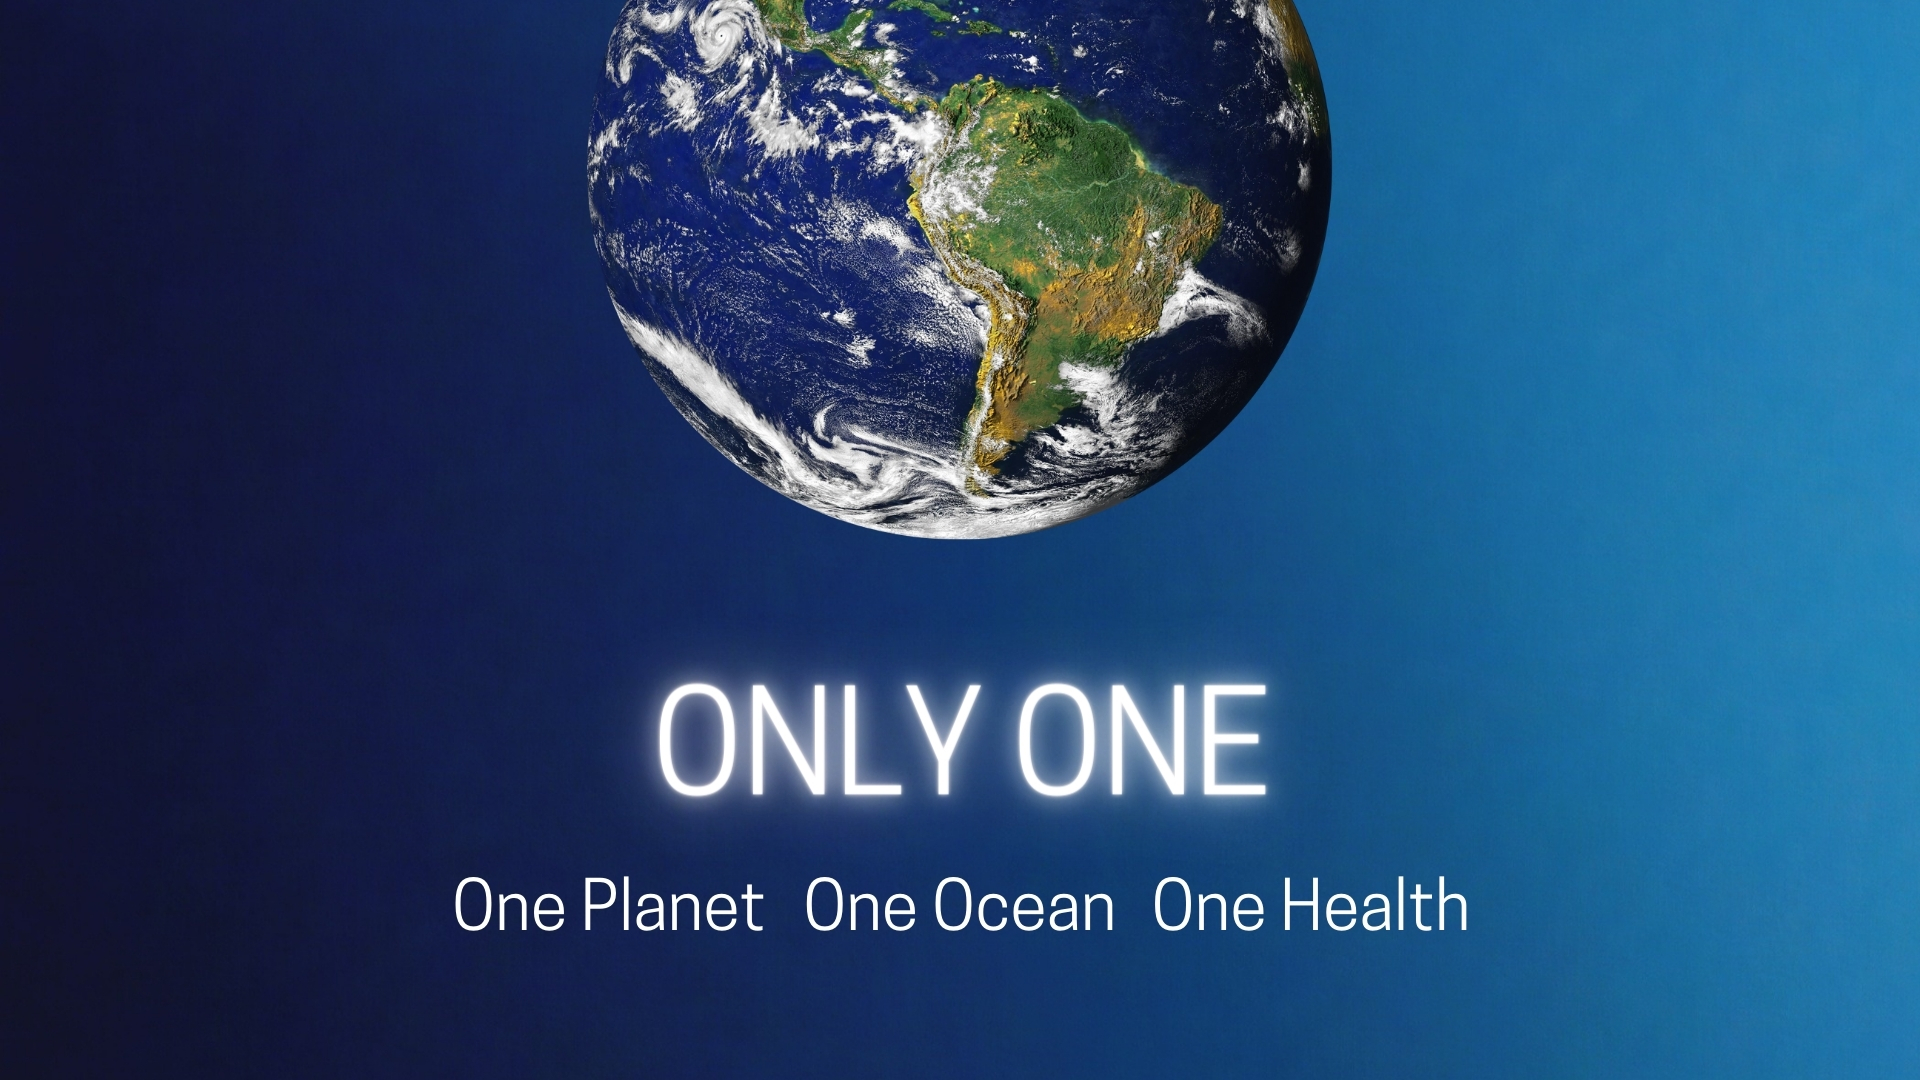 “Only One”: ospitata a Torino per il G7 Energia e Ambiente la campagna internazionale di Marevivo sull’urgenza di una transizione ecologica